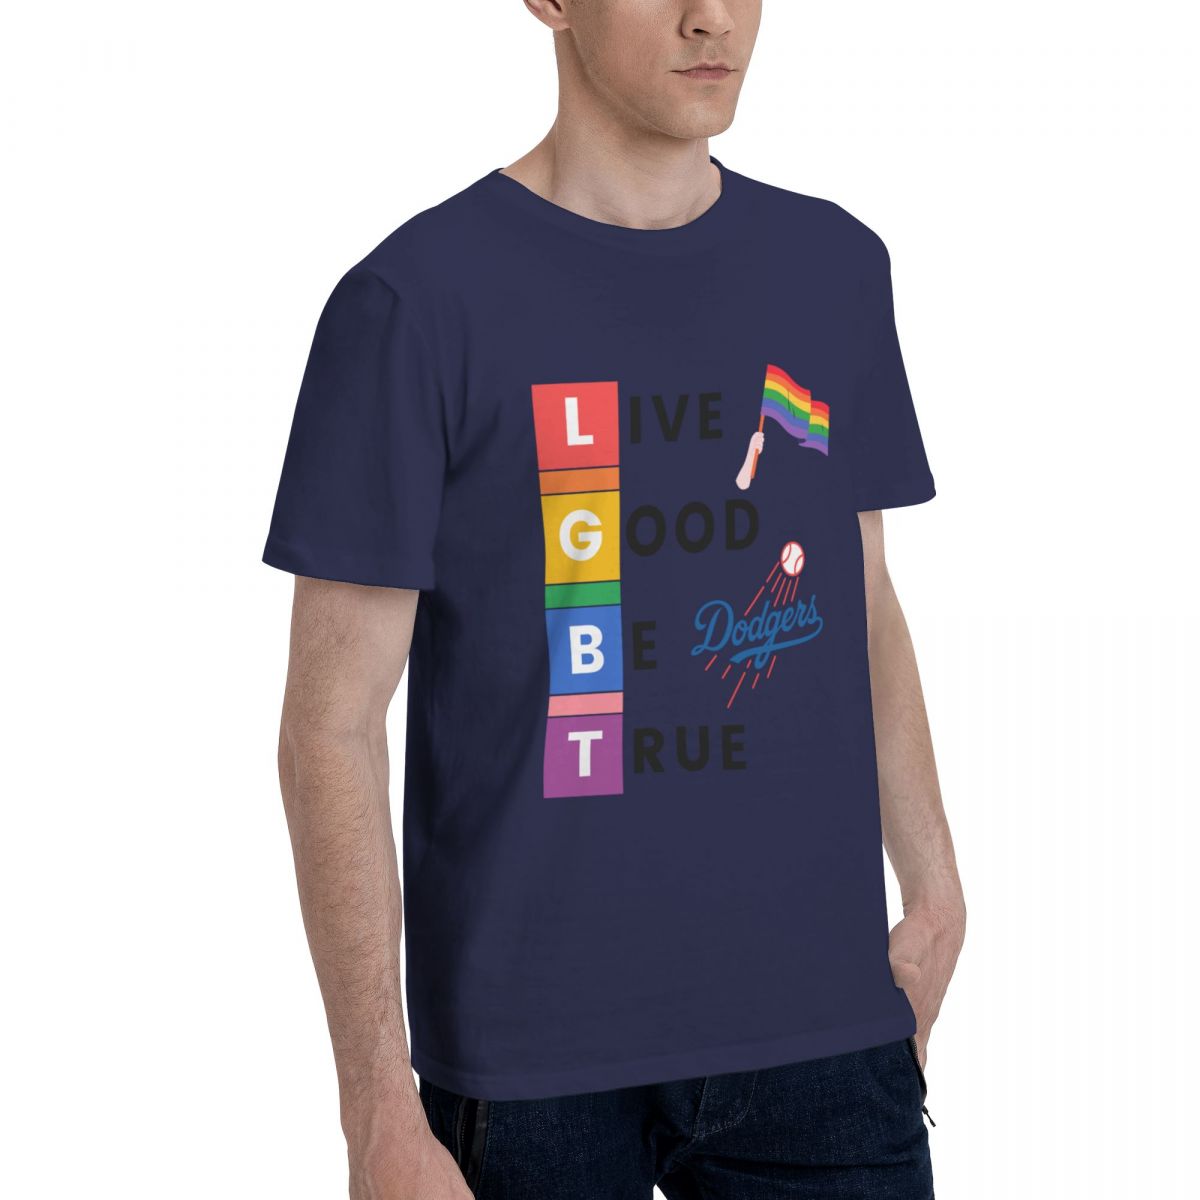 Los Angeles Dodgers LGBT Pride Cotton T-Shirt Men's